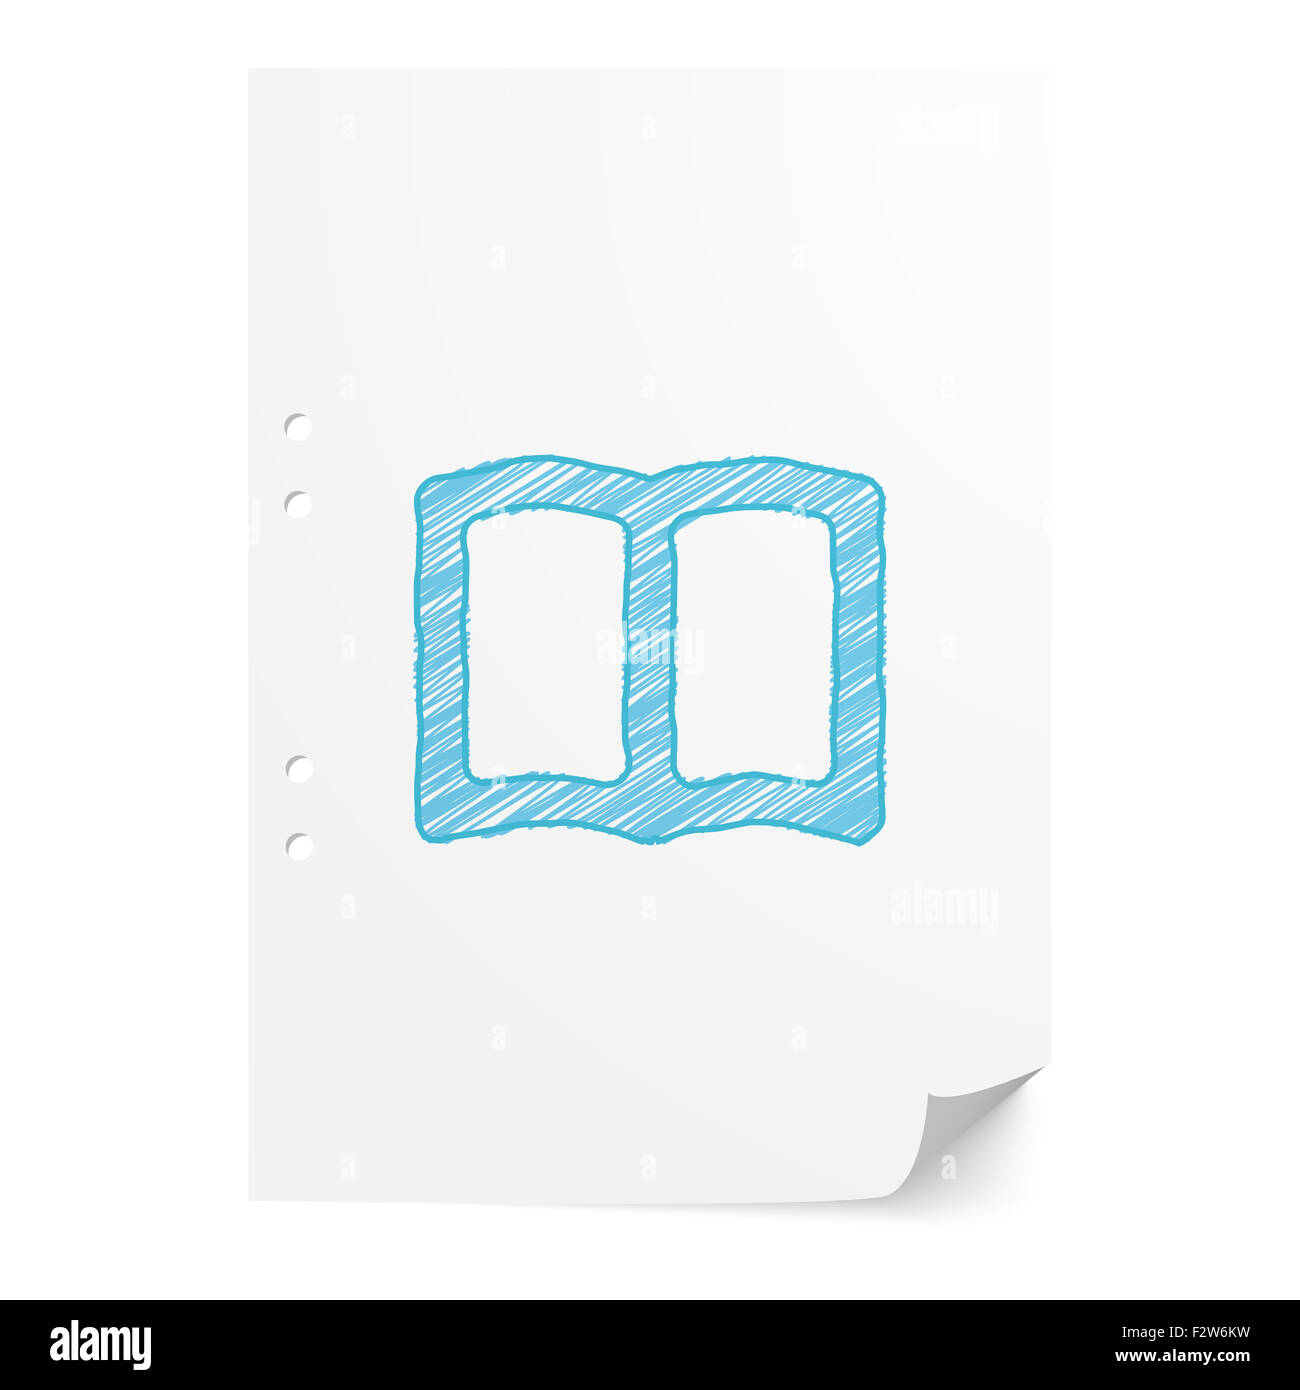 Blue handdrawn Prenota illustrazione sul foglio di carta bianco con spazio di copia Foto Stock